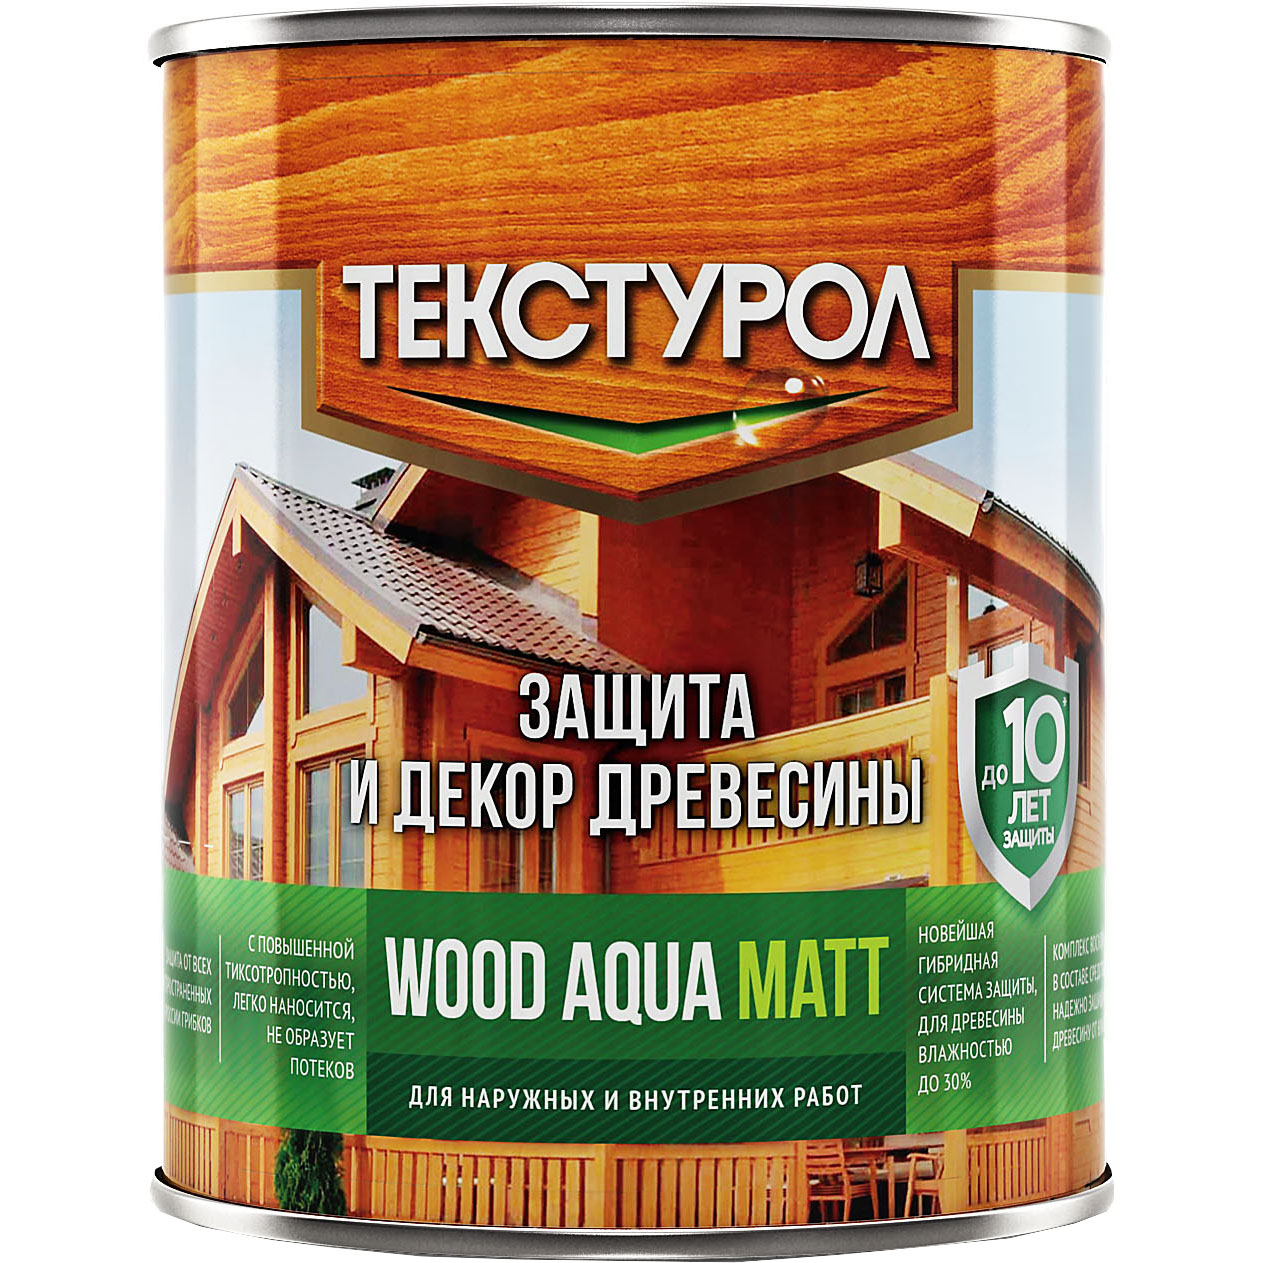 Текстурол WOOD AQUA MATT деревозащитное средство на вод. основе Орех 0,8л Л-С